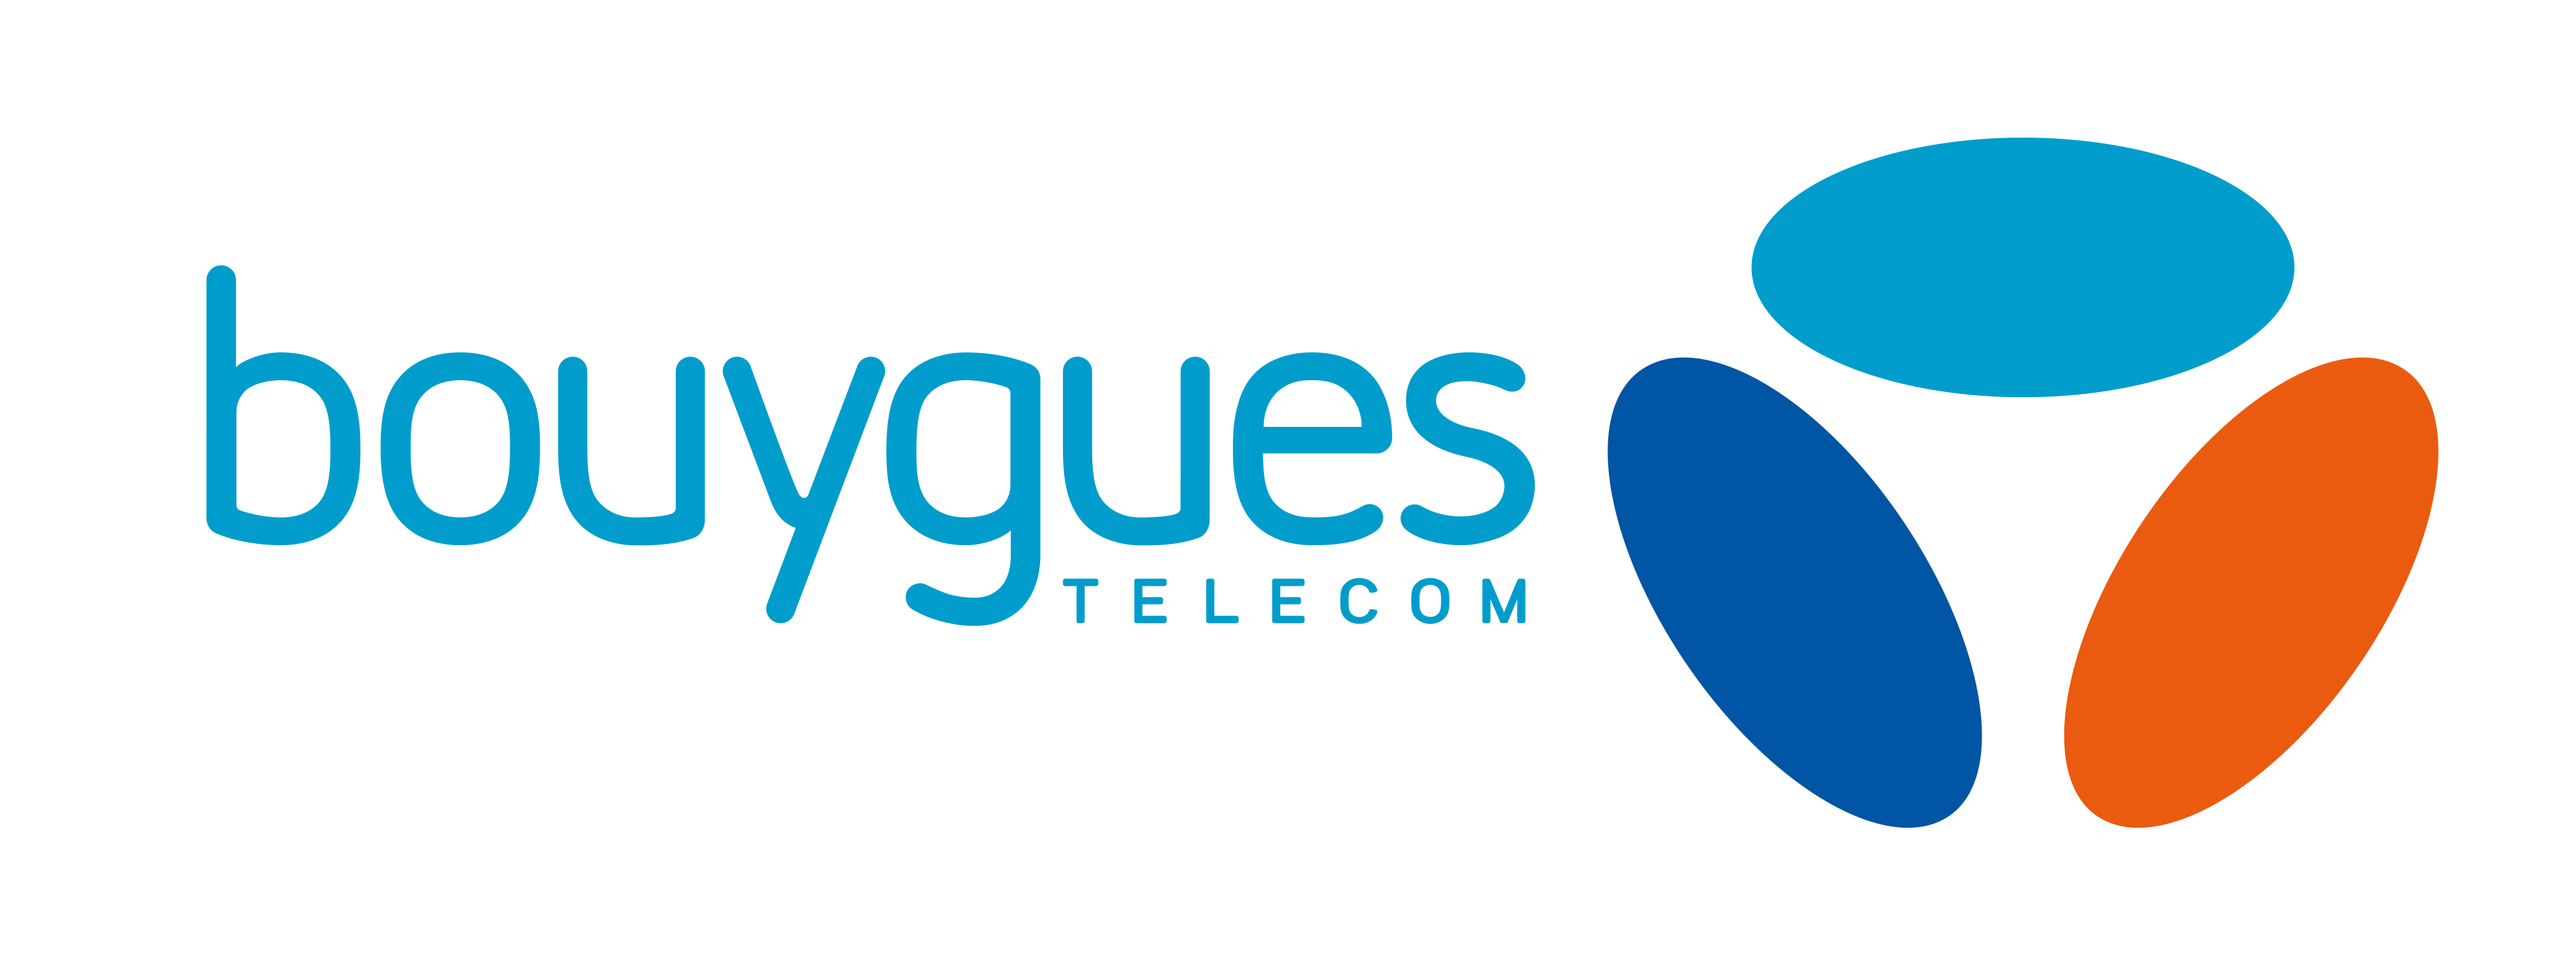 Bouygues_Télécom